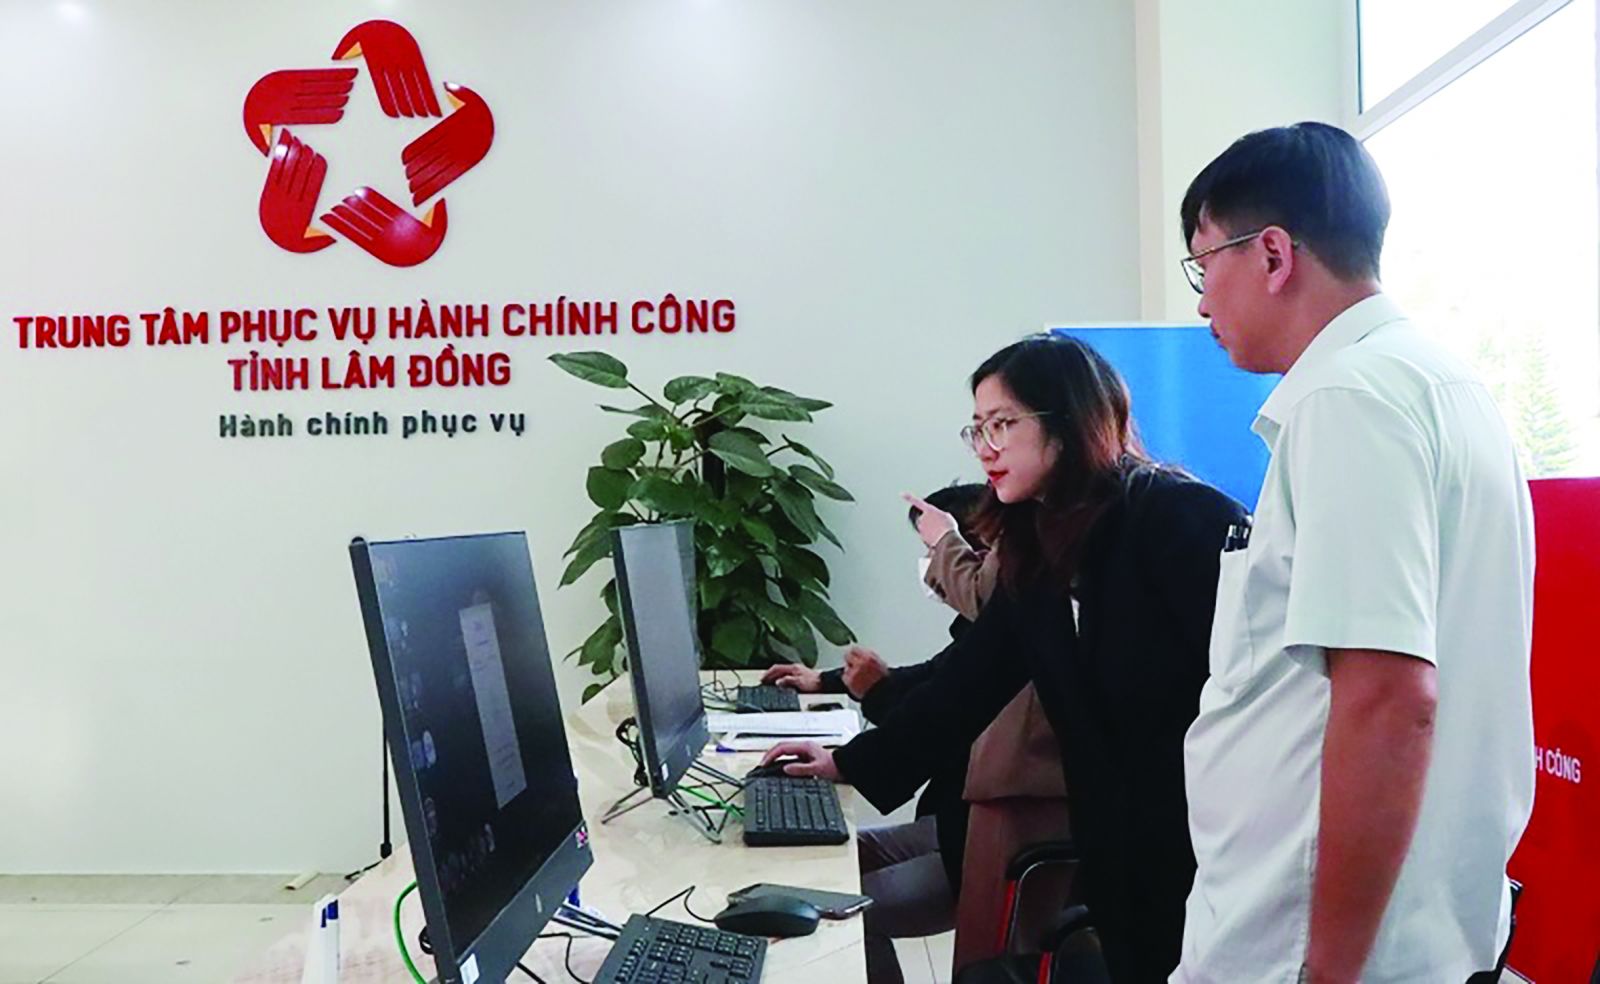  Cán bộ Trung tâm hành chính công tỉnh Lâm Đồng hướng dẫn người dân, doanh nghiệp nhập hồ sơ qua mạng.